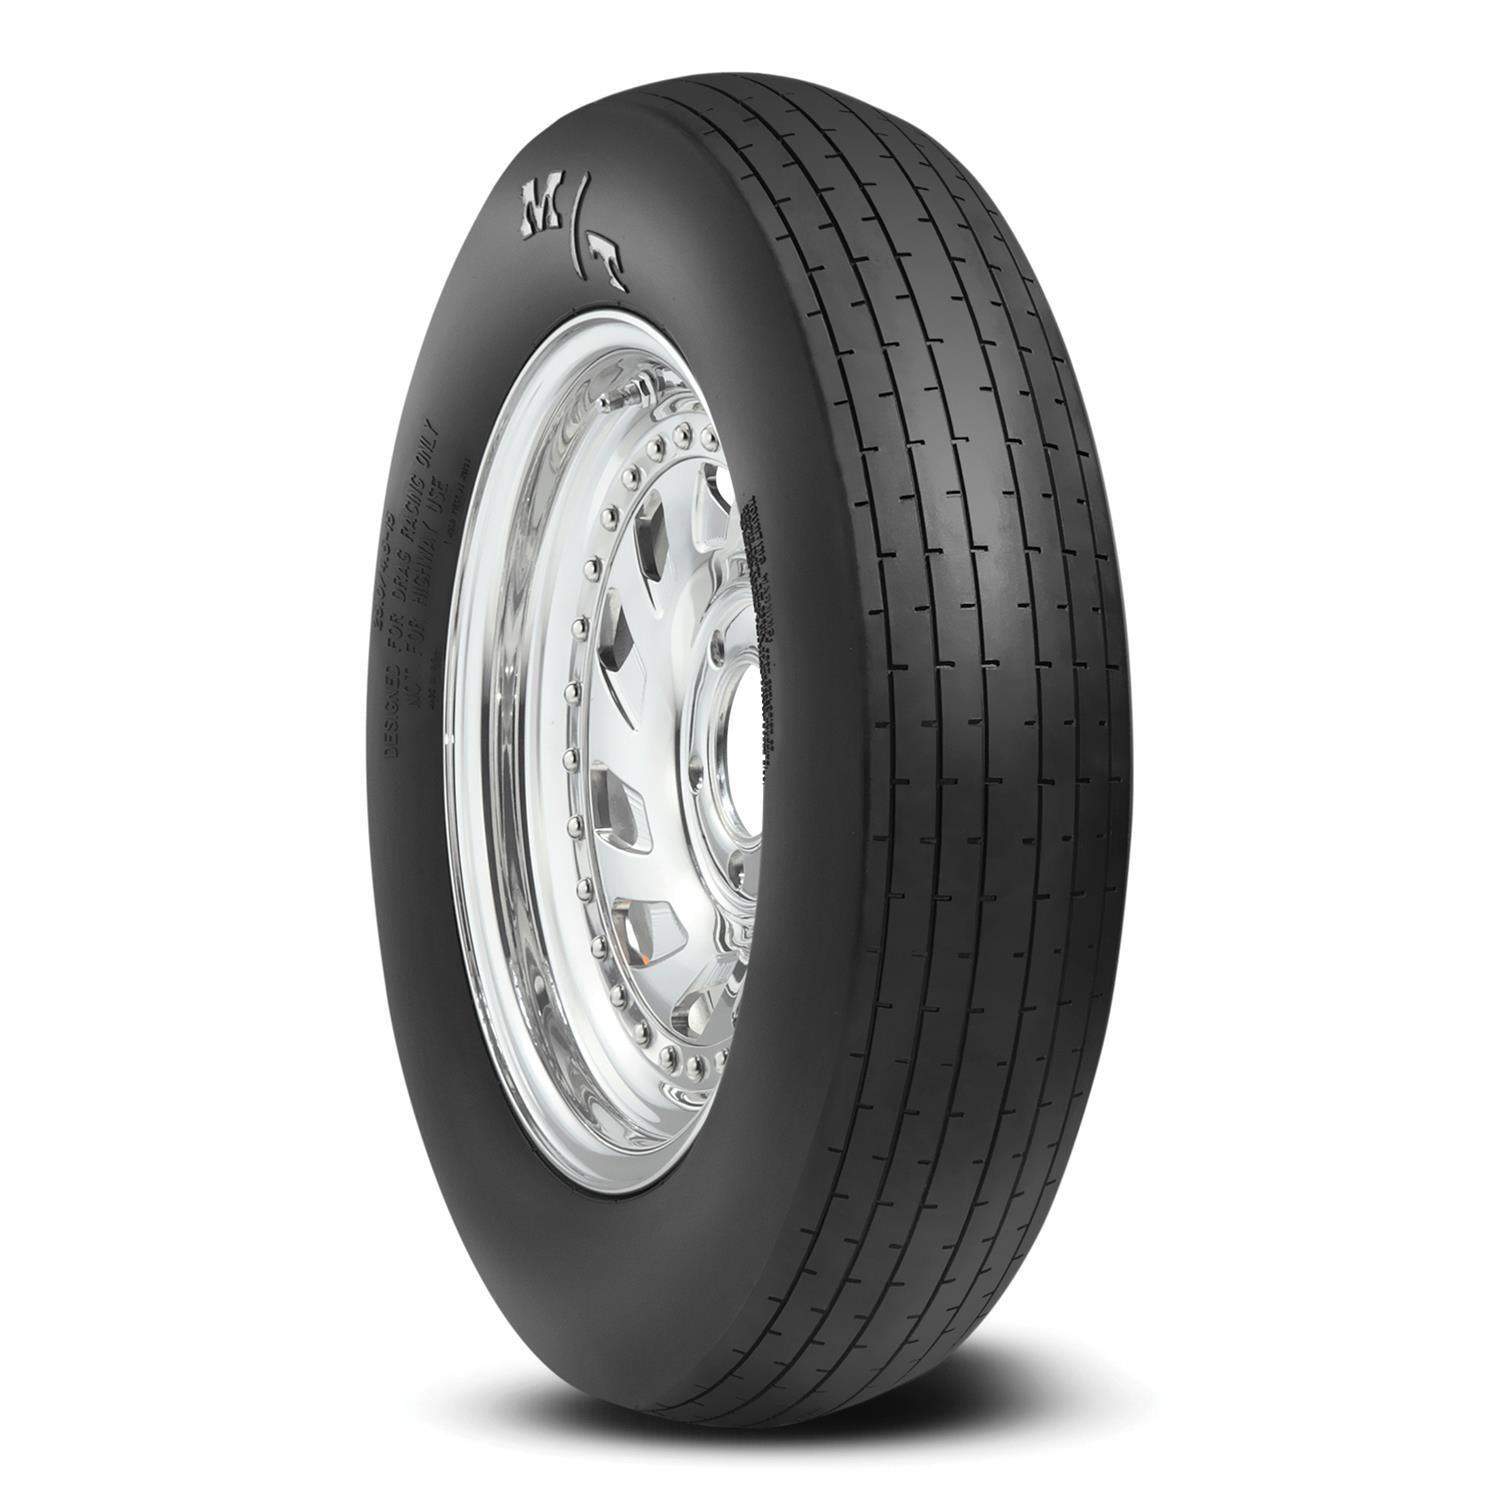 26x4-15 ET Drag Front Tire - Burlile Performance Products